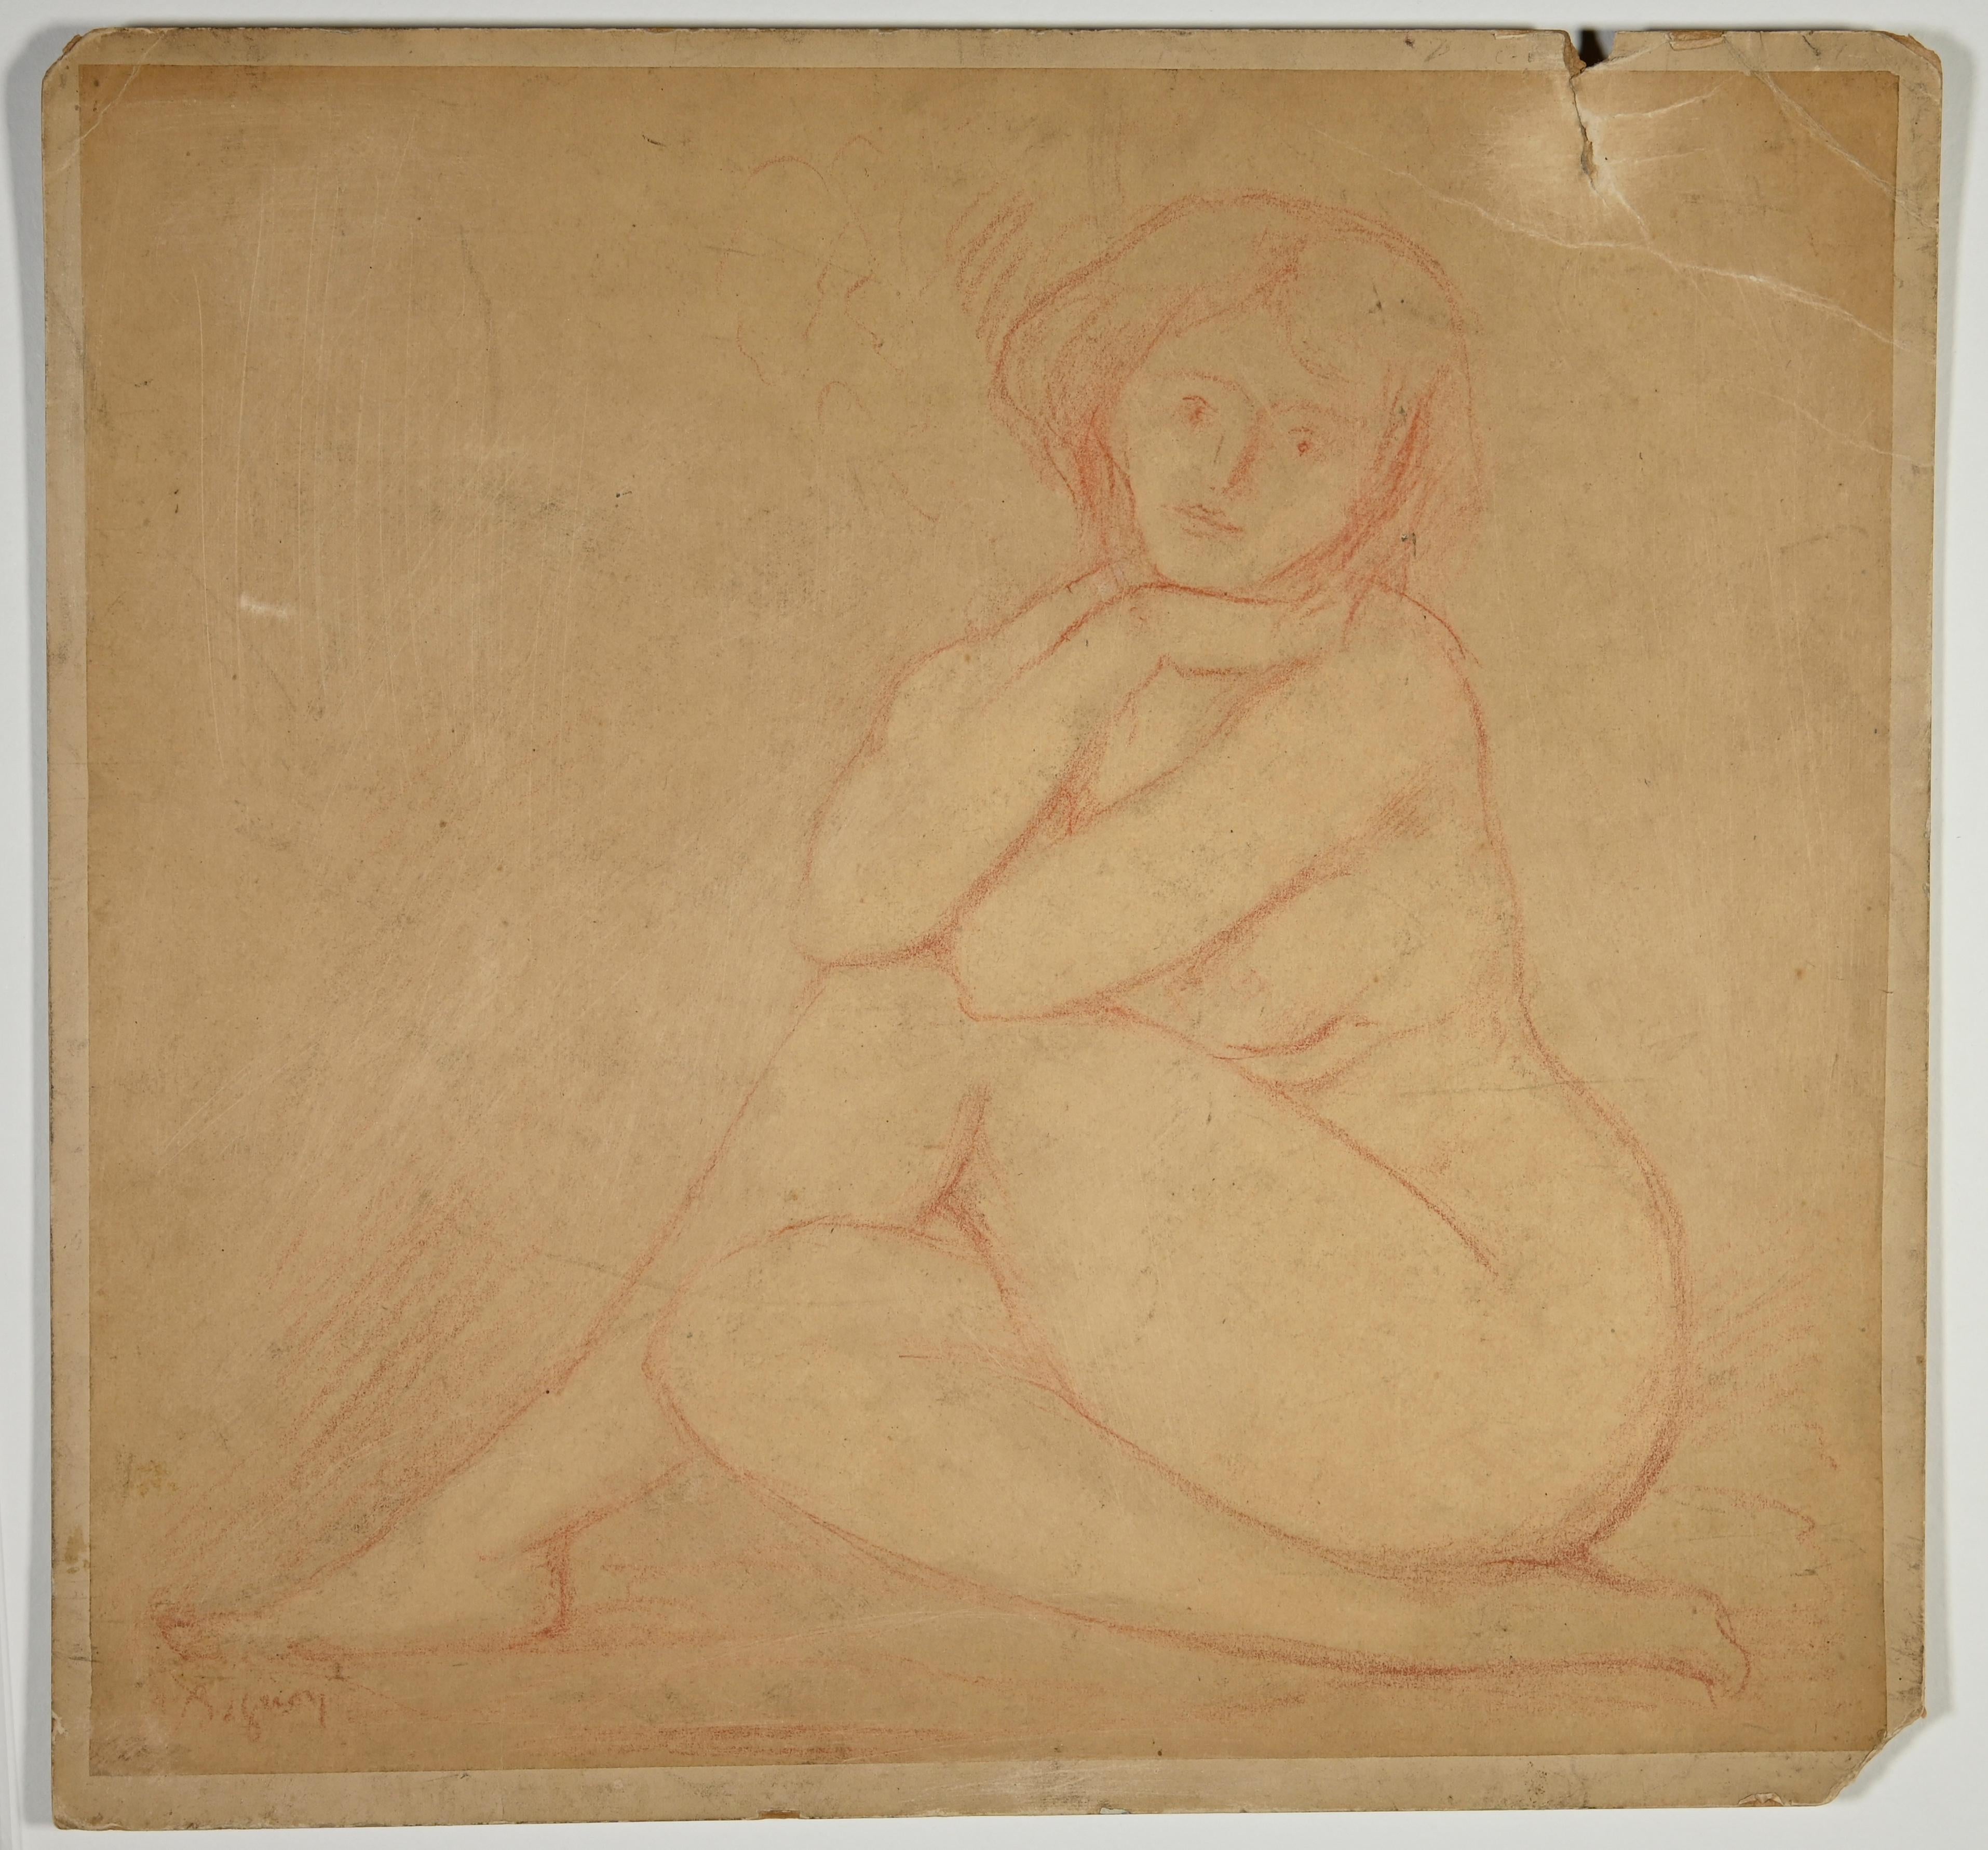 Nude of Woman ist ein Kunstwerk des französischen Künstlers Emile André LeRoy.

Pastell-Zeichnung auf Papier. Handsigniert am linken Rand.

Guter Zustand bis auf einen kleinen Einriss am rechten Rand des Papiers.

Emile André Leroy (1899-1953) war